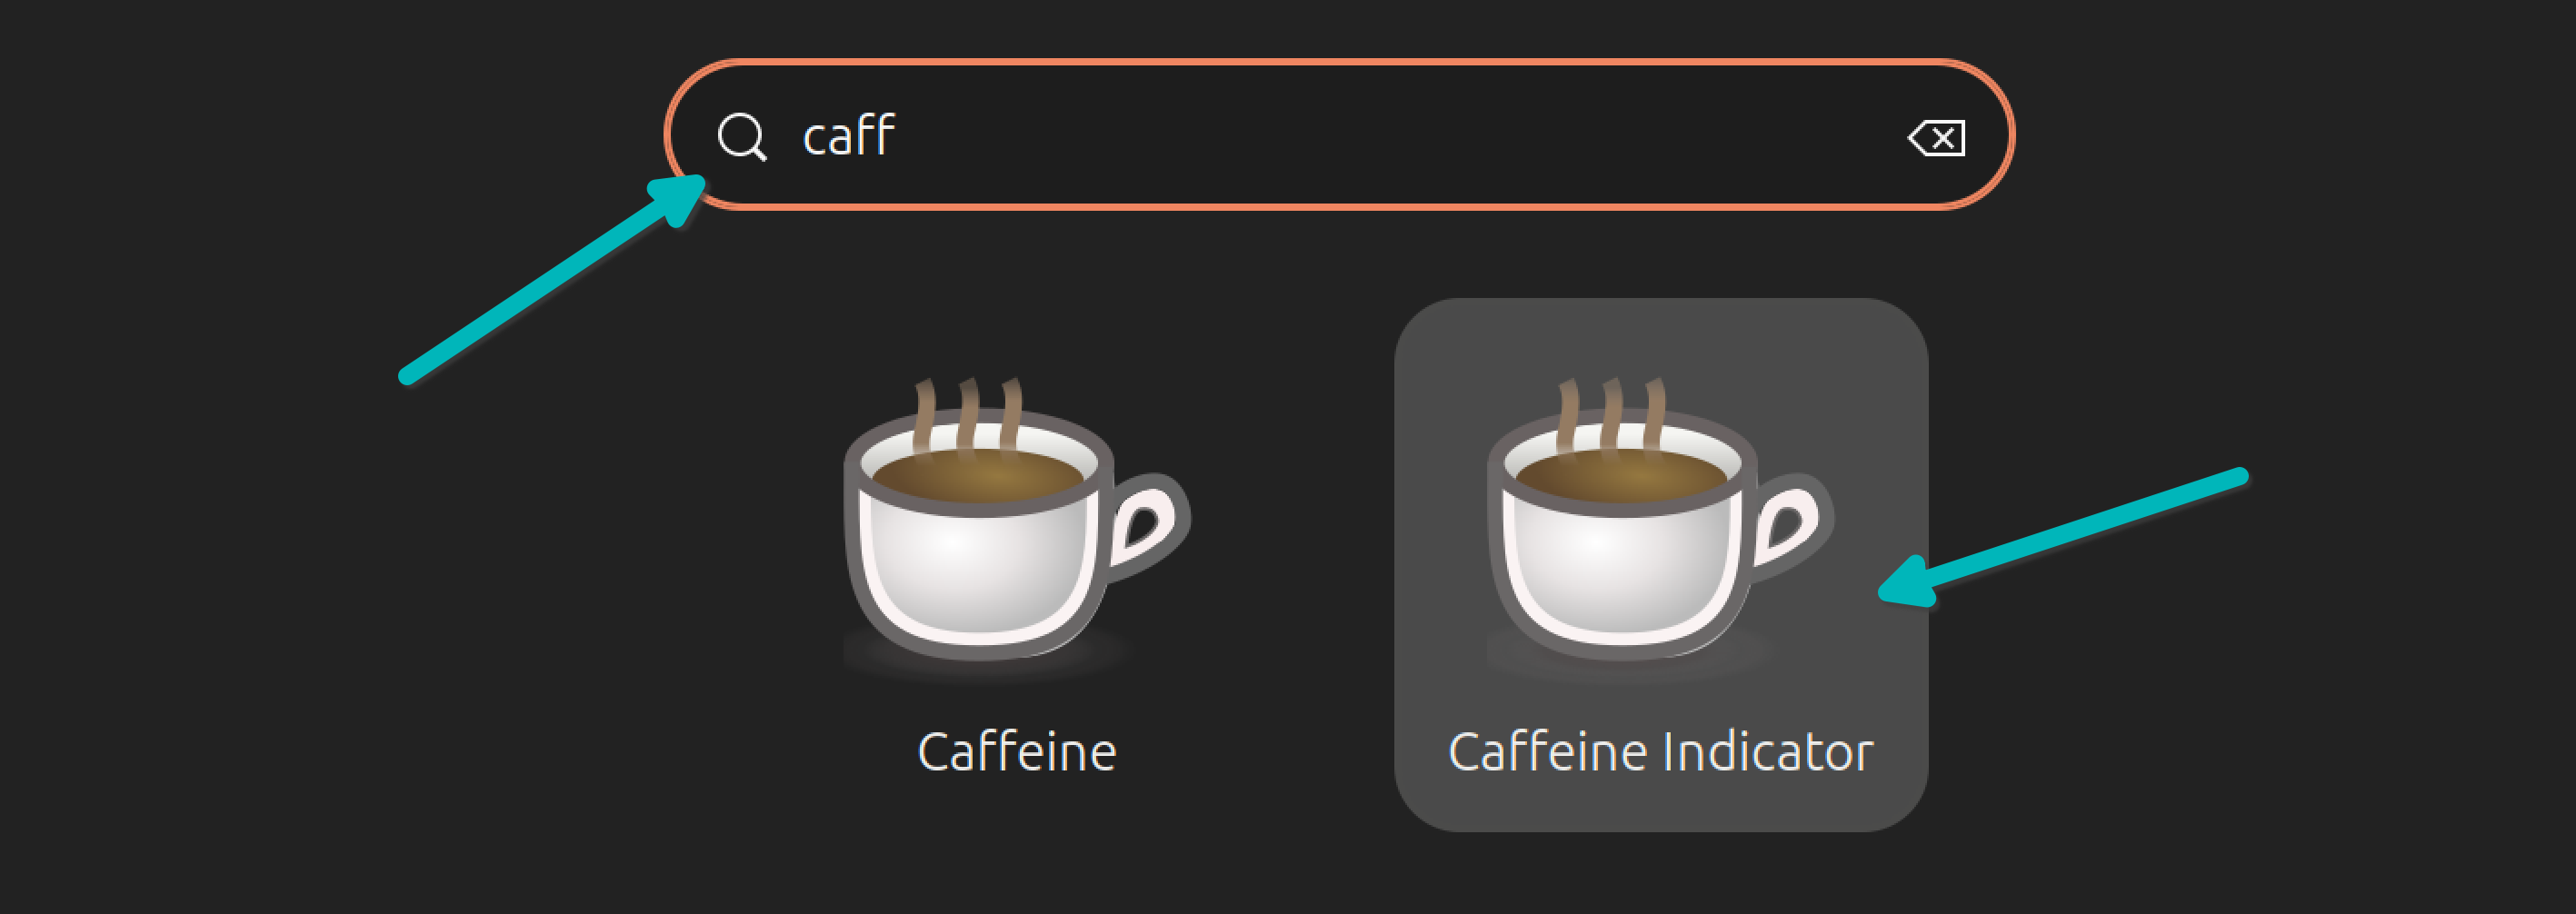 Start Caffeine app in Linux